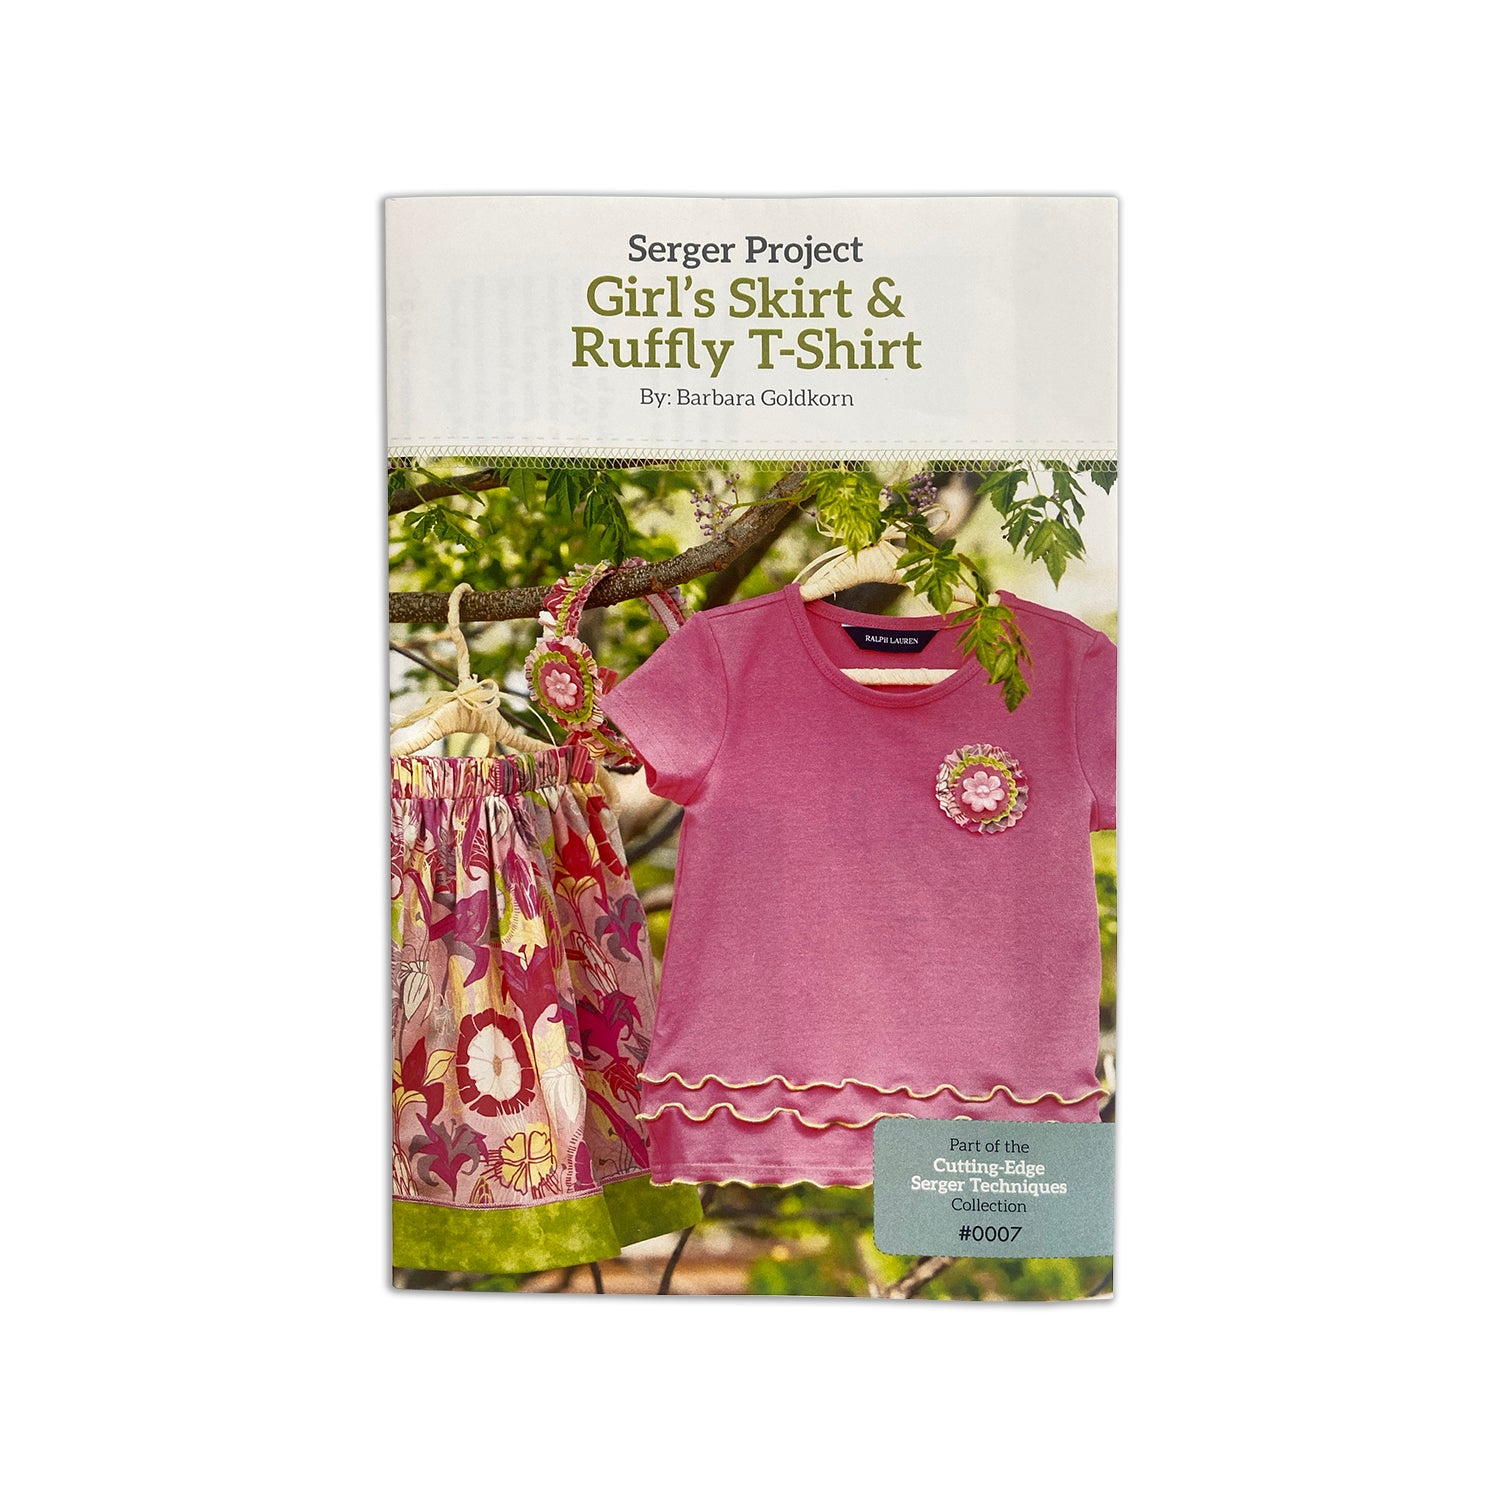 Girl's Skirt & Ruffly T-Shirt - Serger Project